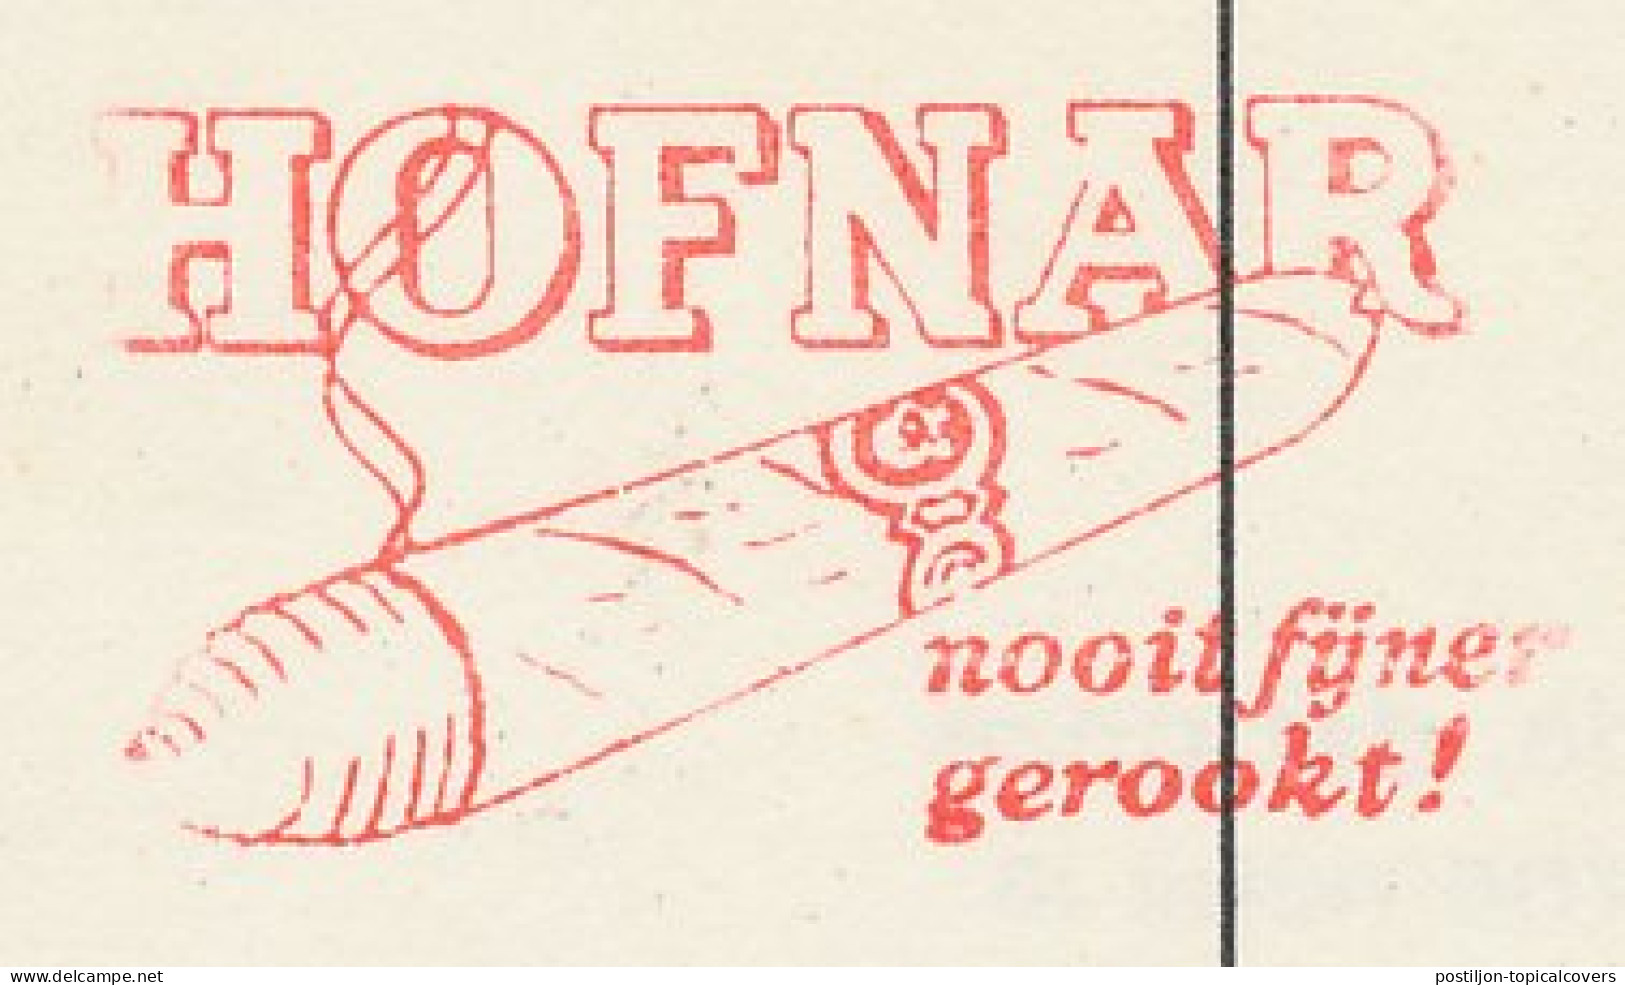 Meter Card Netherlands 1974 Cigar - Hofnar - Valkenswaard - Tabak